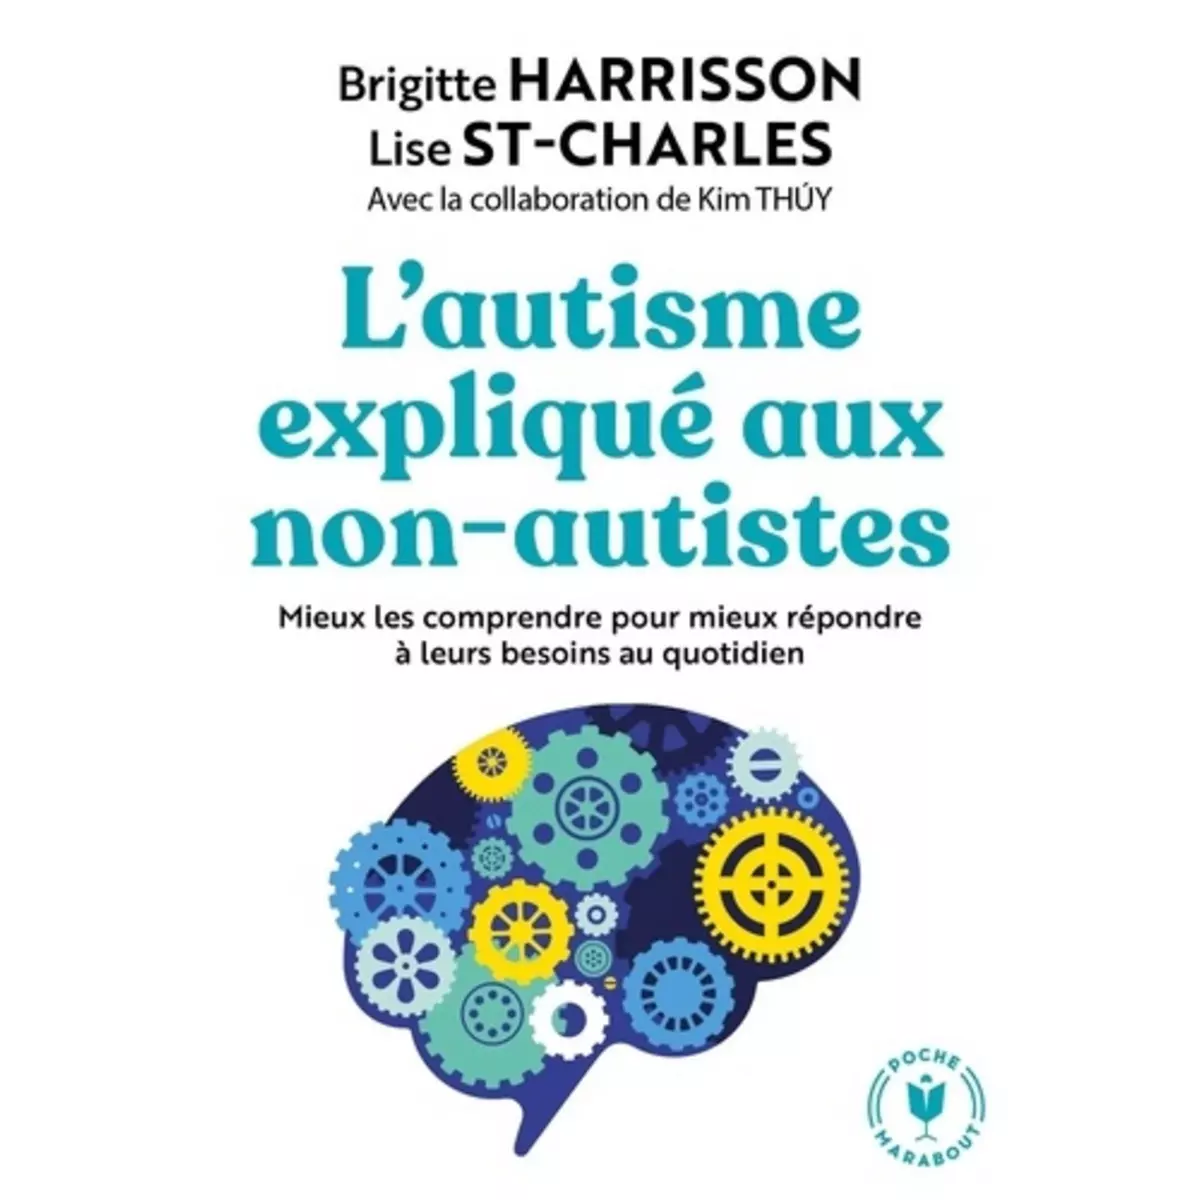  L'AUTISME EXPLIQUE AUX NON AUTISTES, Harrison Brigitte